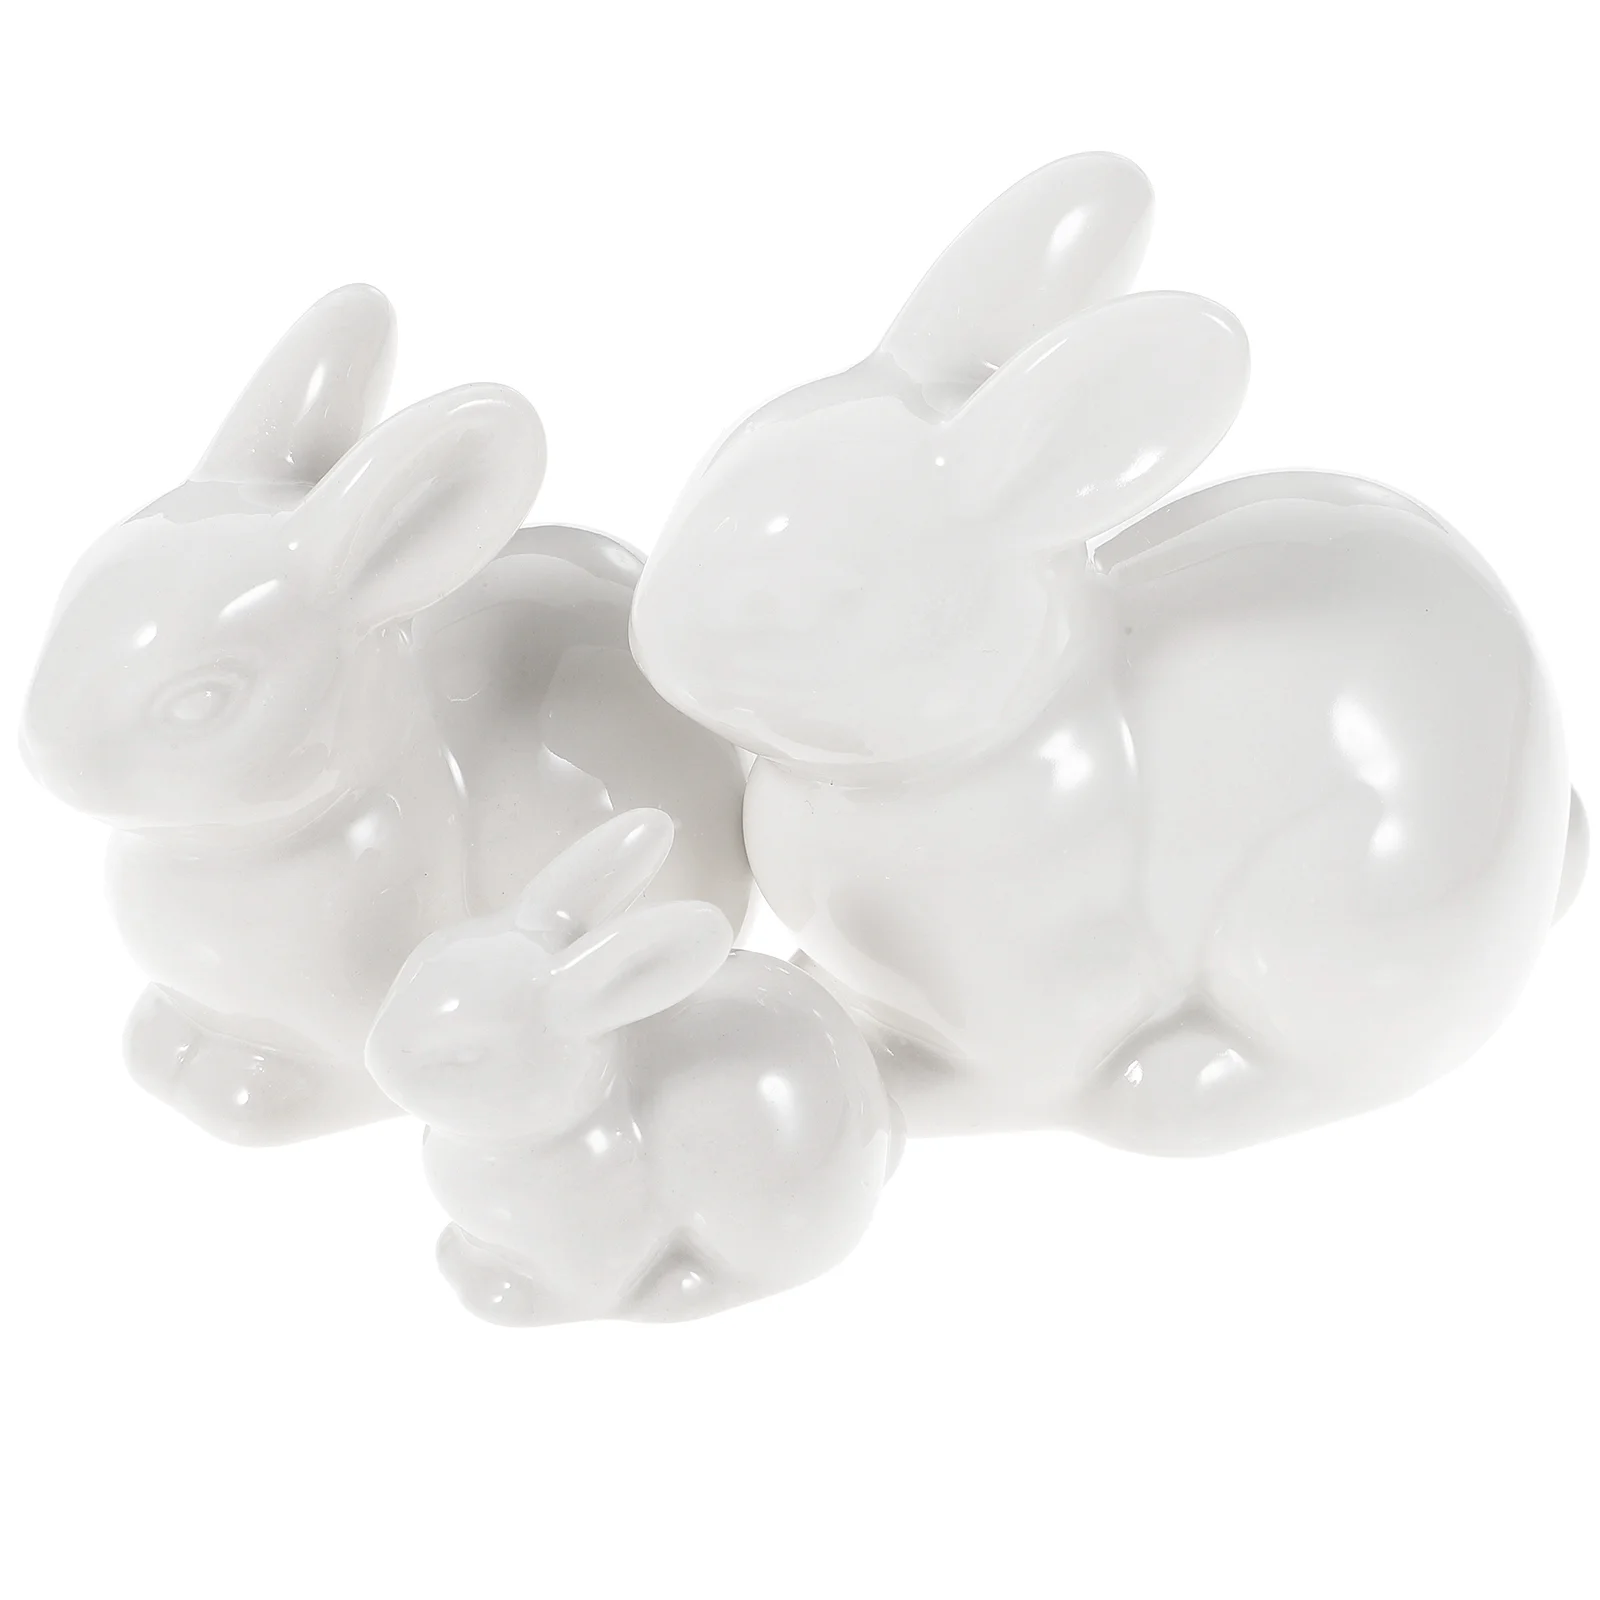 

Bunny Rabbit Easter Ceramic Figurines Ornament Mini Decor Miniature Garden Figurine Statue White Decorations Rabbits Ornaments